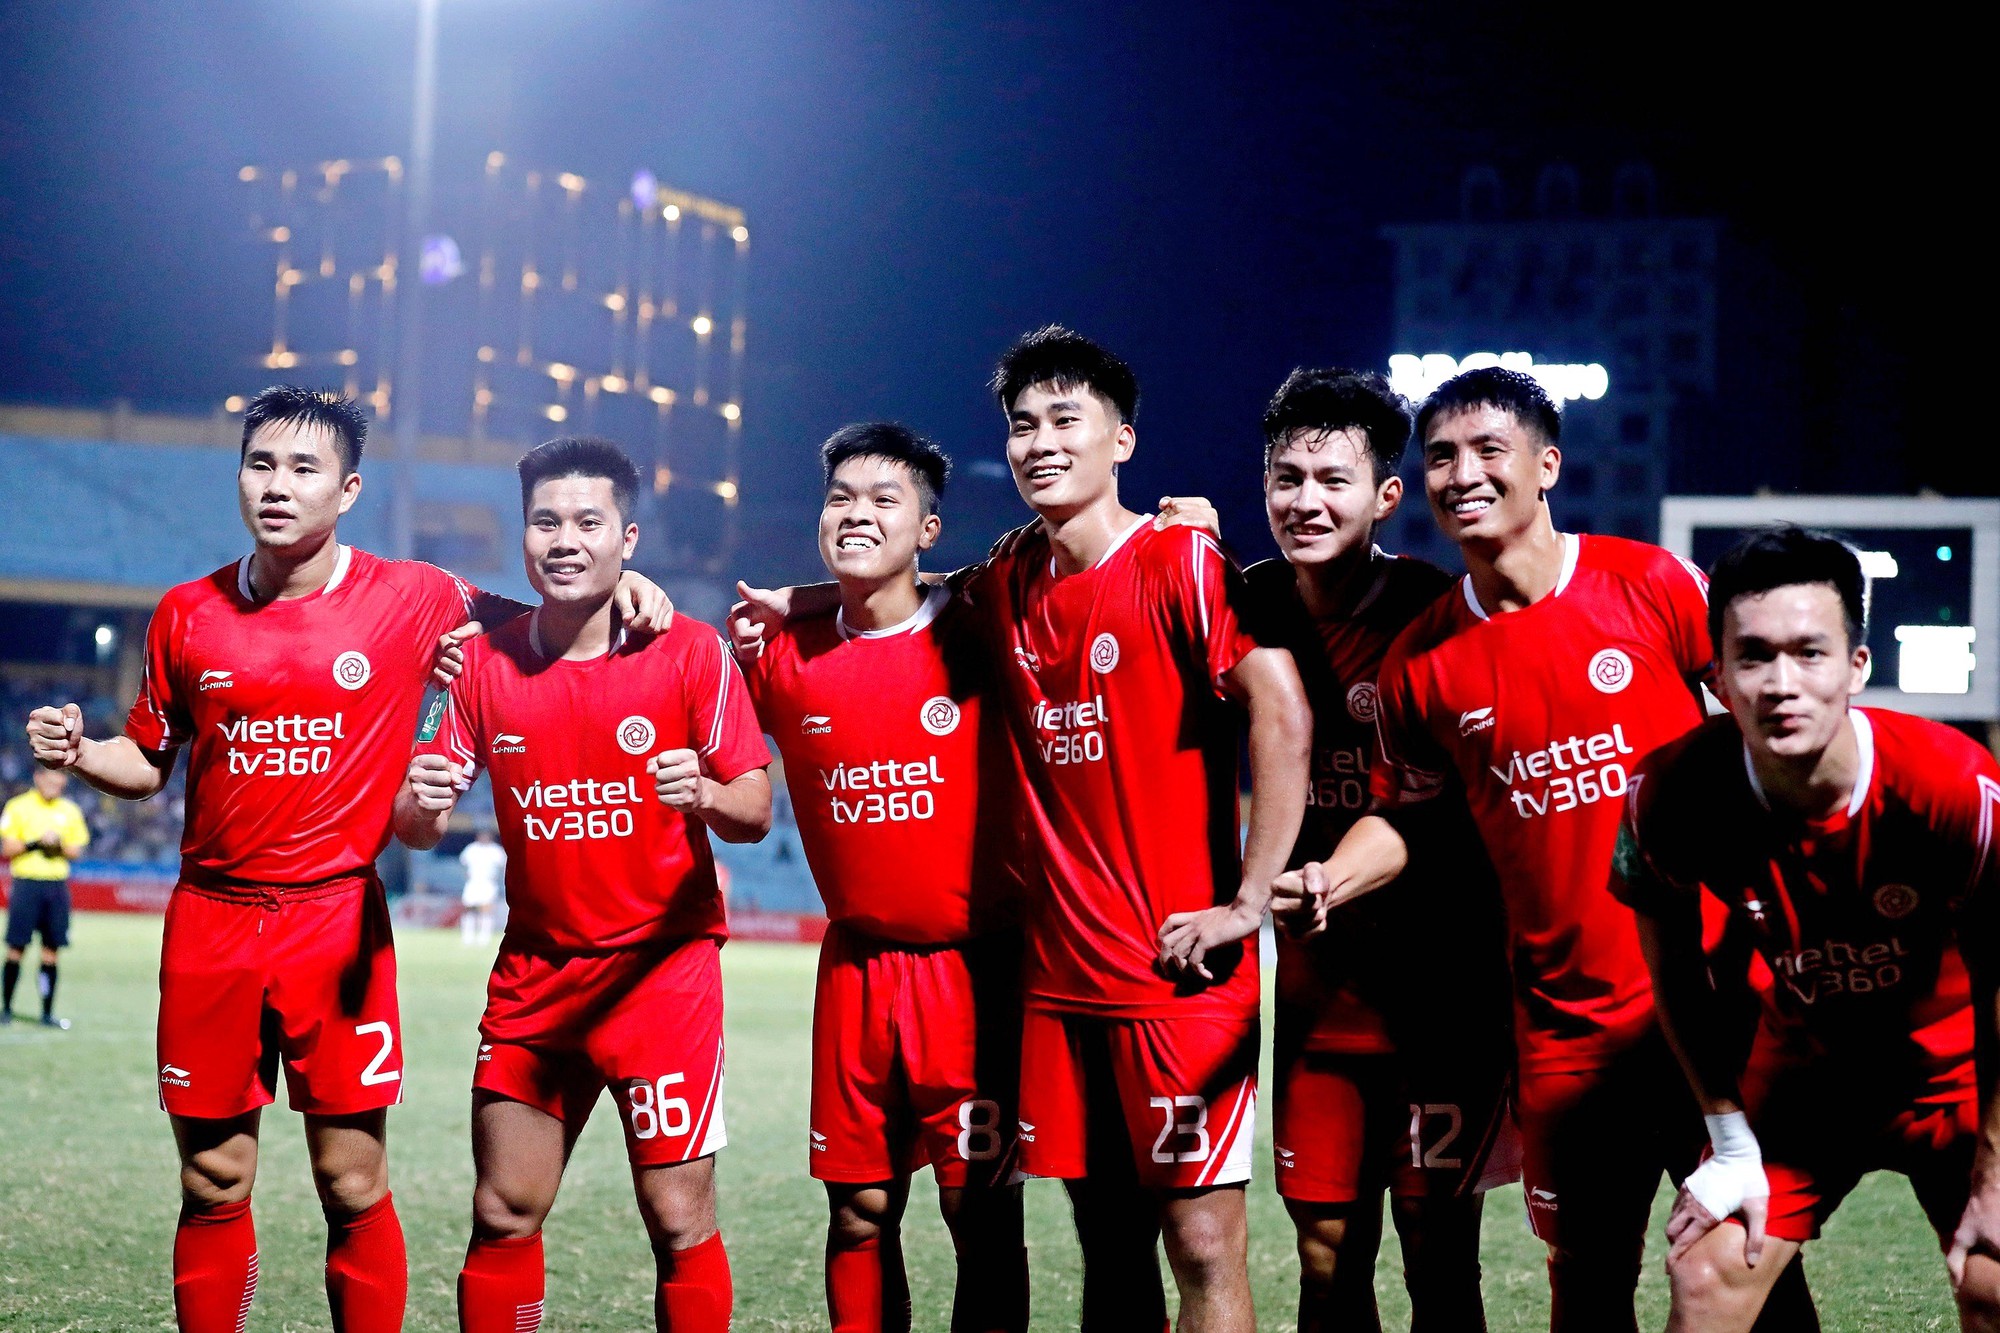 CLB Viettel đang thành công trong tư cách đội có tỷ lệ cầu thủ tự đào tạo cao nhất Việt Nam